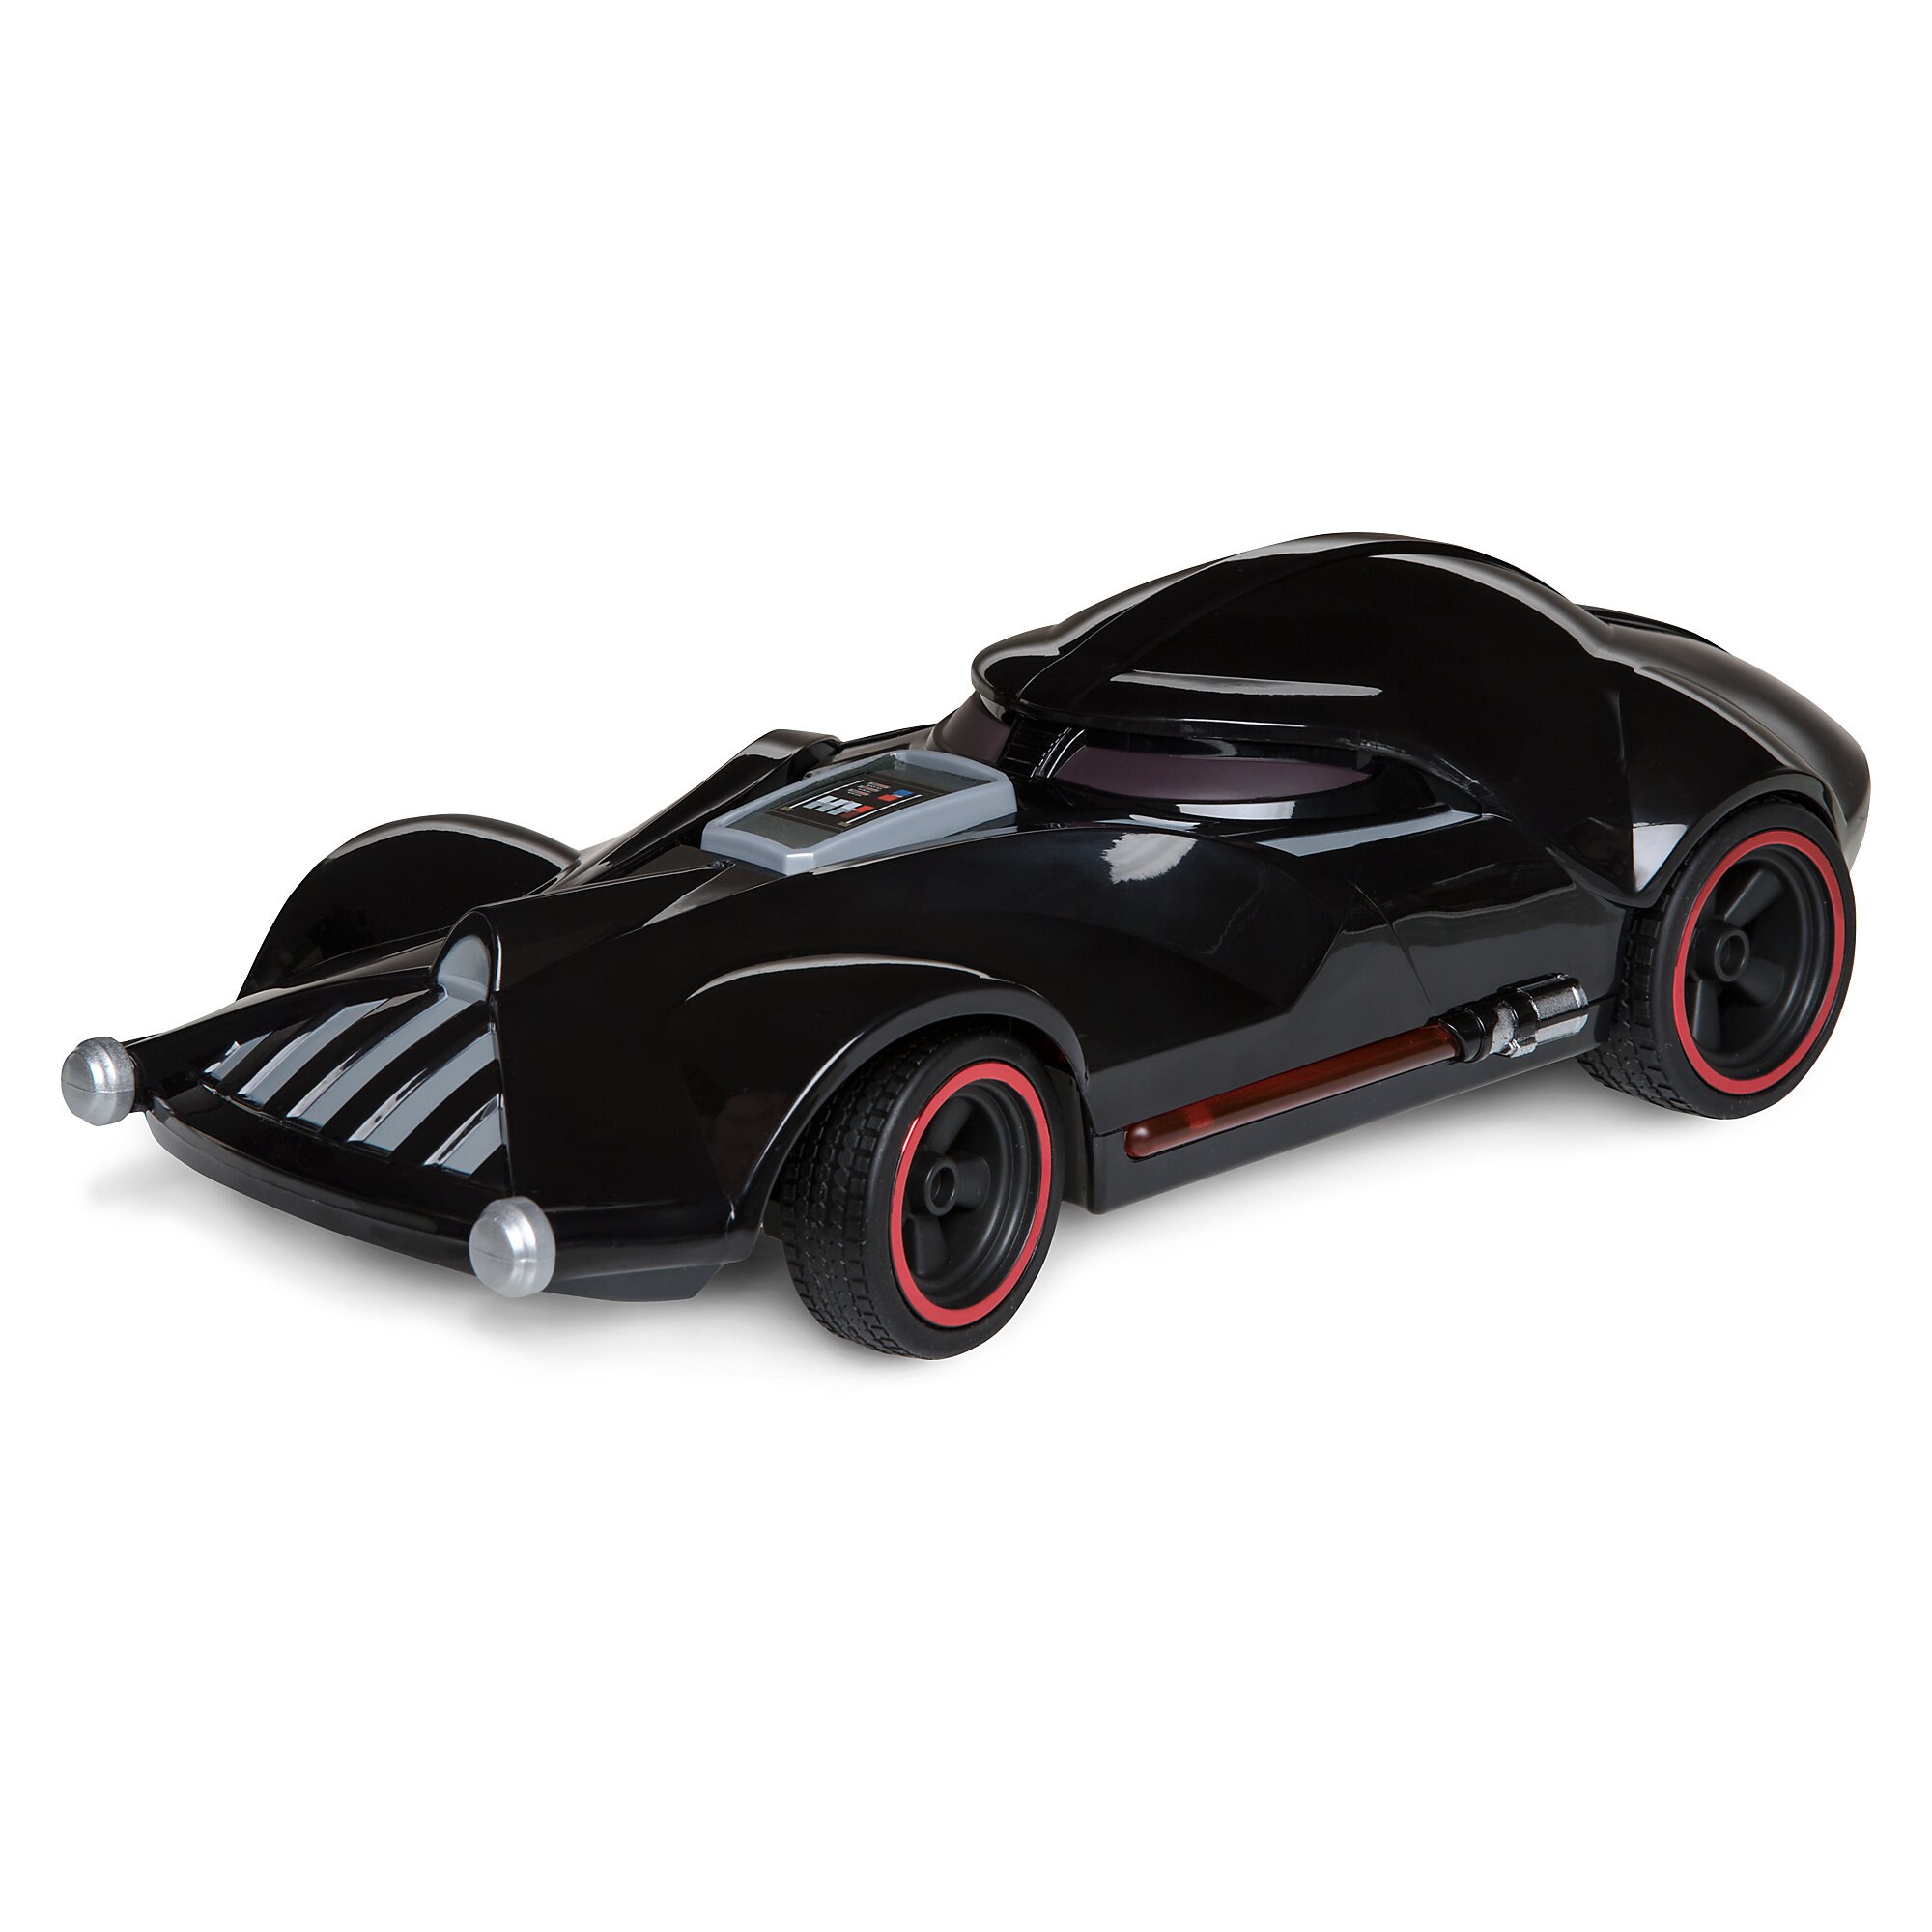 Darth Vader Hot Wheels RC Vehicle by Mattel